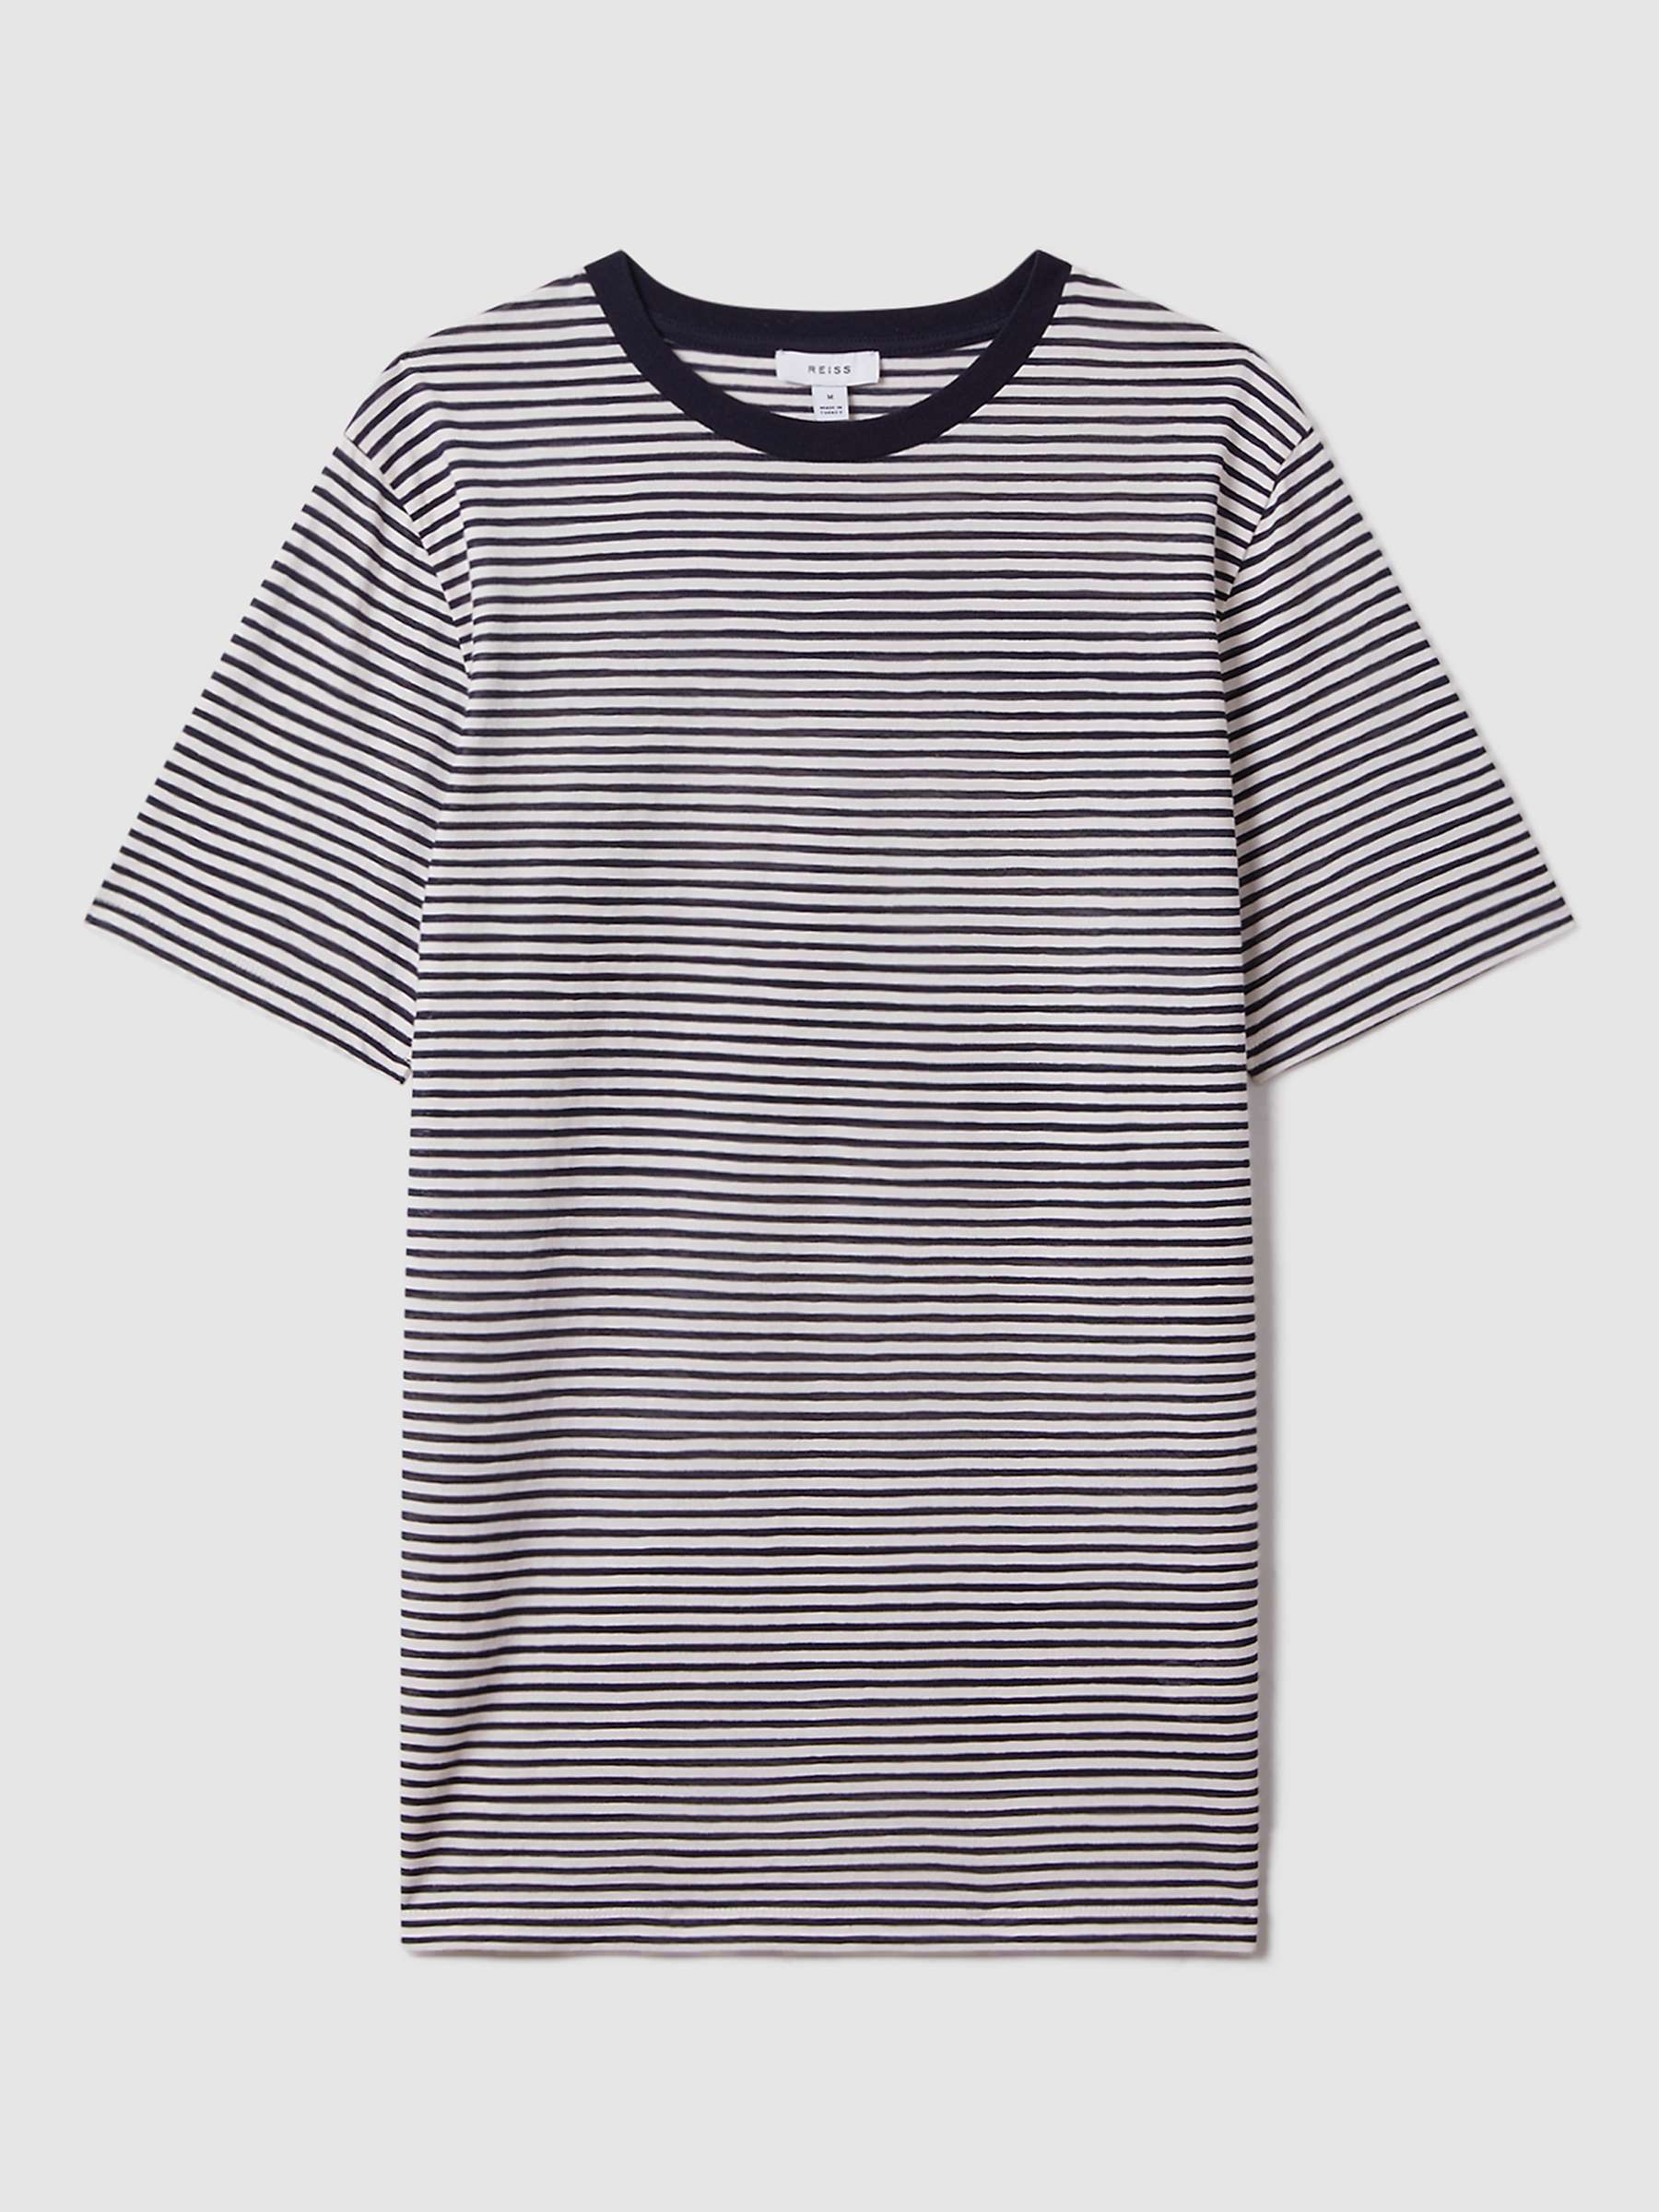 Buy Reiss Keats Short Sleeve Stripe T-Shirt, Navy/White Online at johnlewis.com